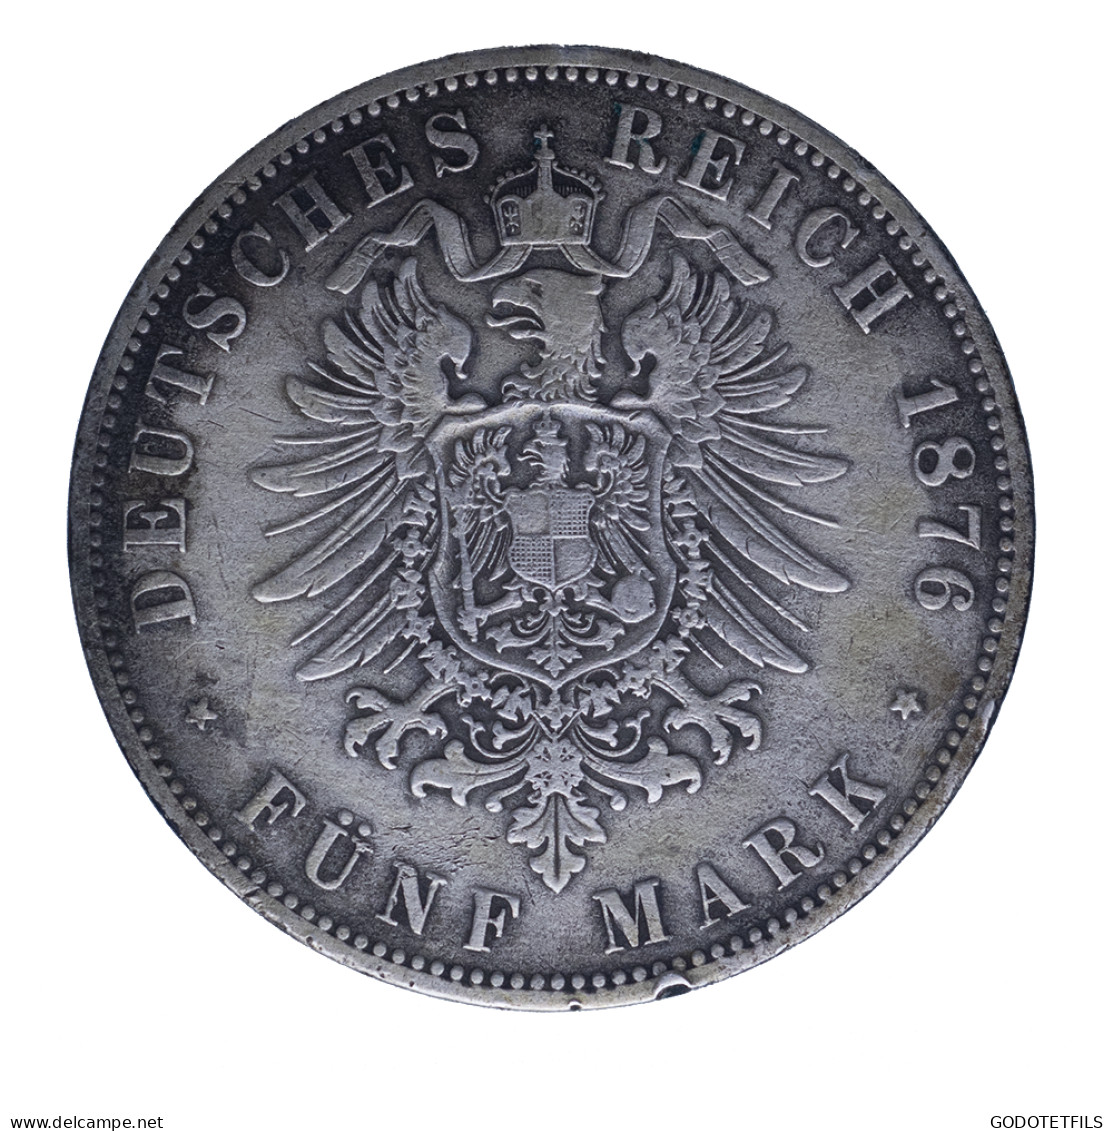 Allemagne-Royaume De Prusse Wilhelm 5 Mark 1876 Berlin - 2, 3 & 5 Mark Argent